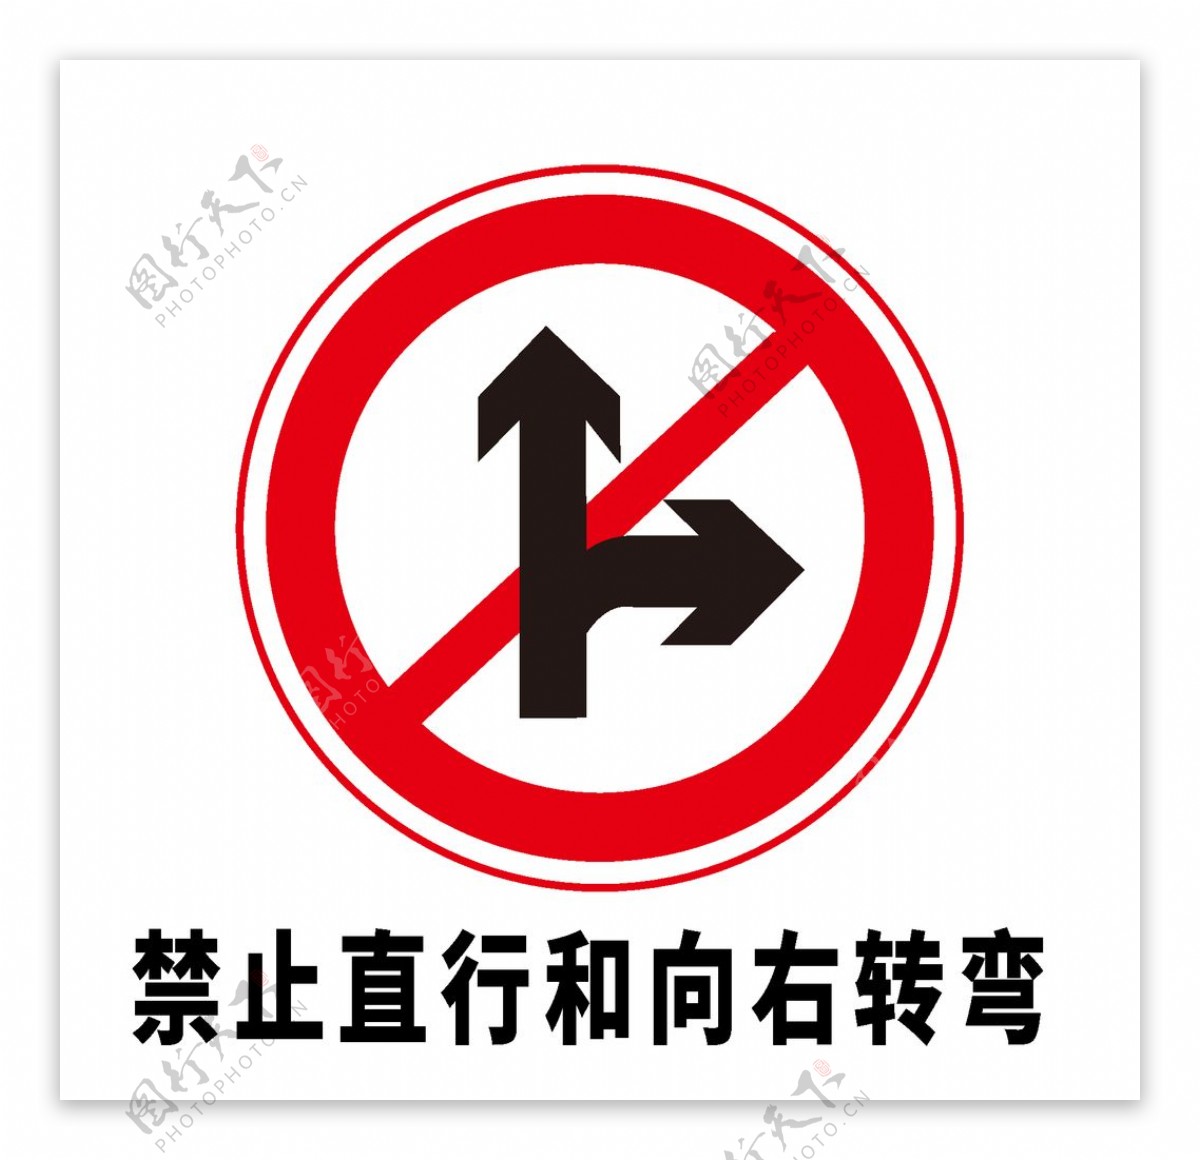 矢量交通标志禁止直行和向右转图片